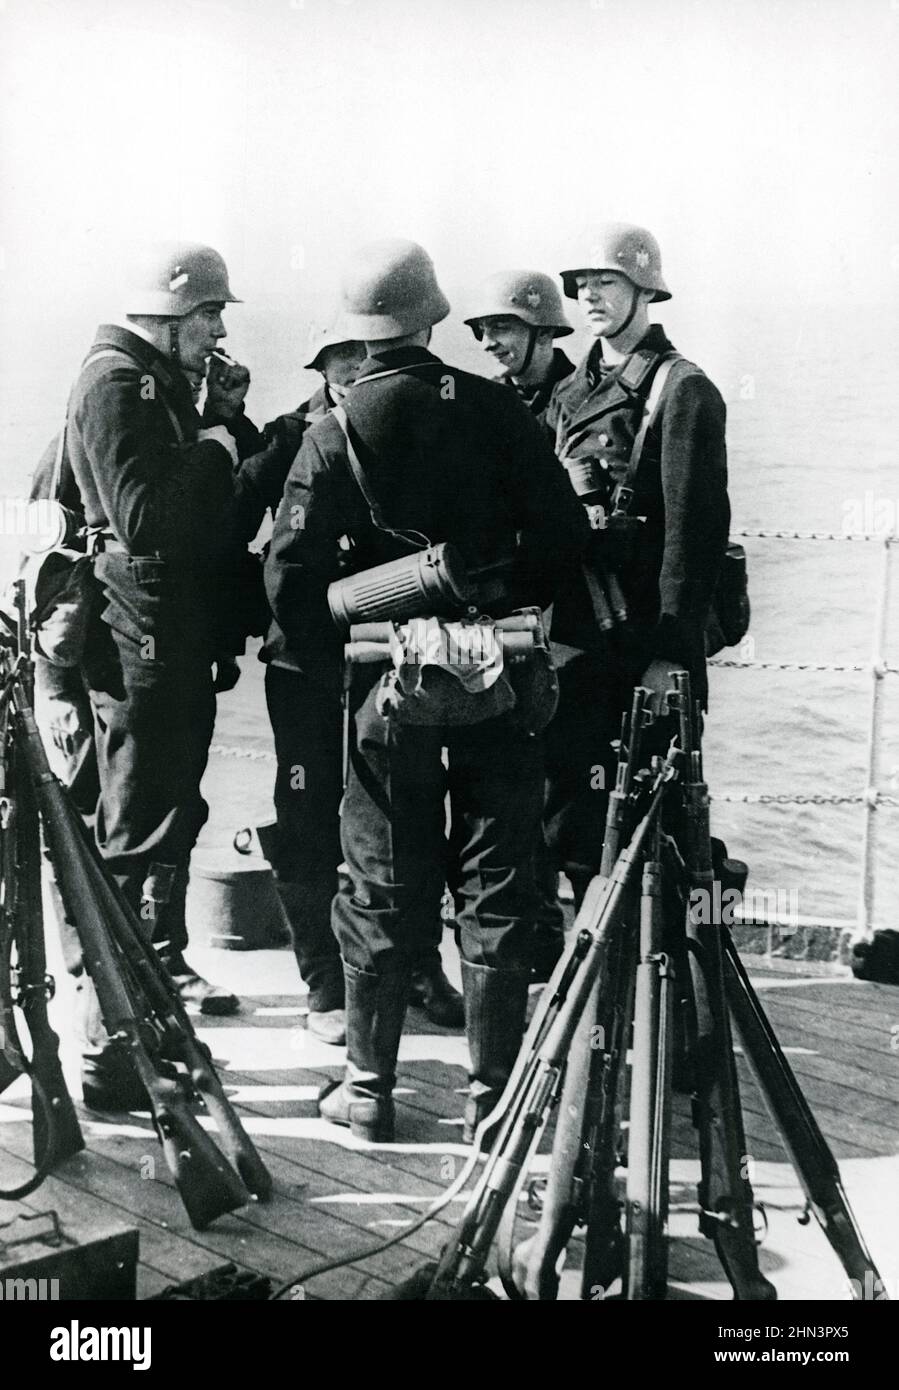 Photo d'époque soldats marins allemands sur un navire au Danemark. Avril 1940 Banque D'Images